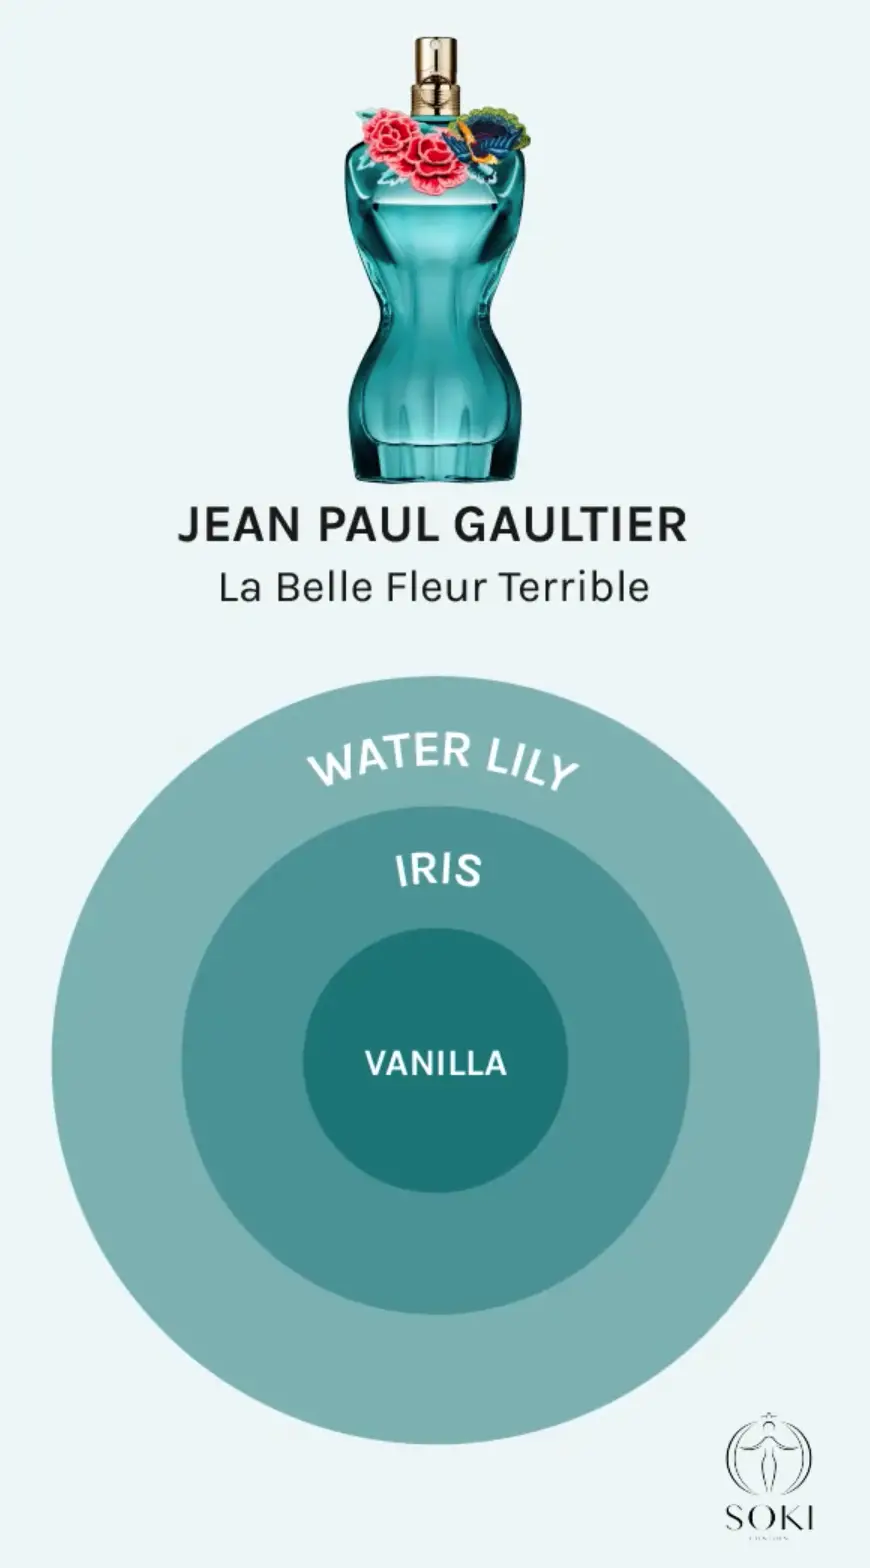 Jean Paul Gaultier La Belle Fleur Terrible